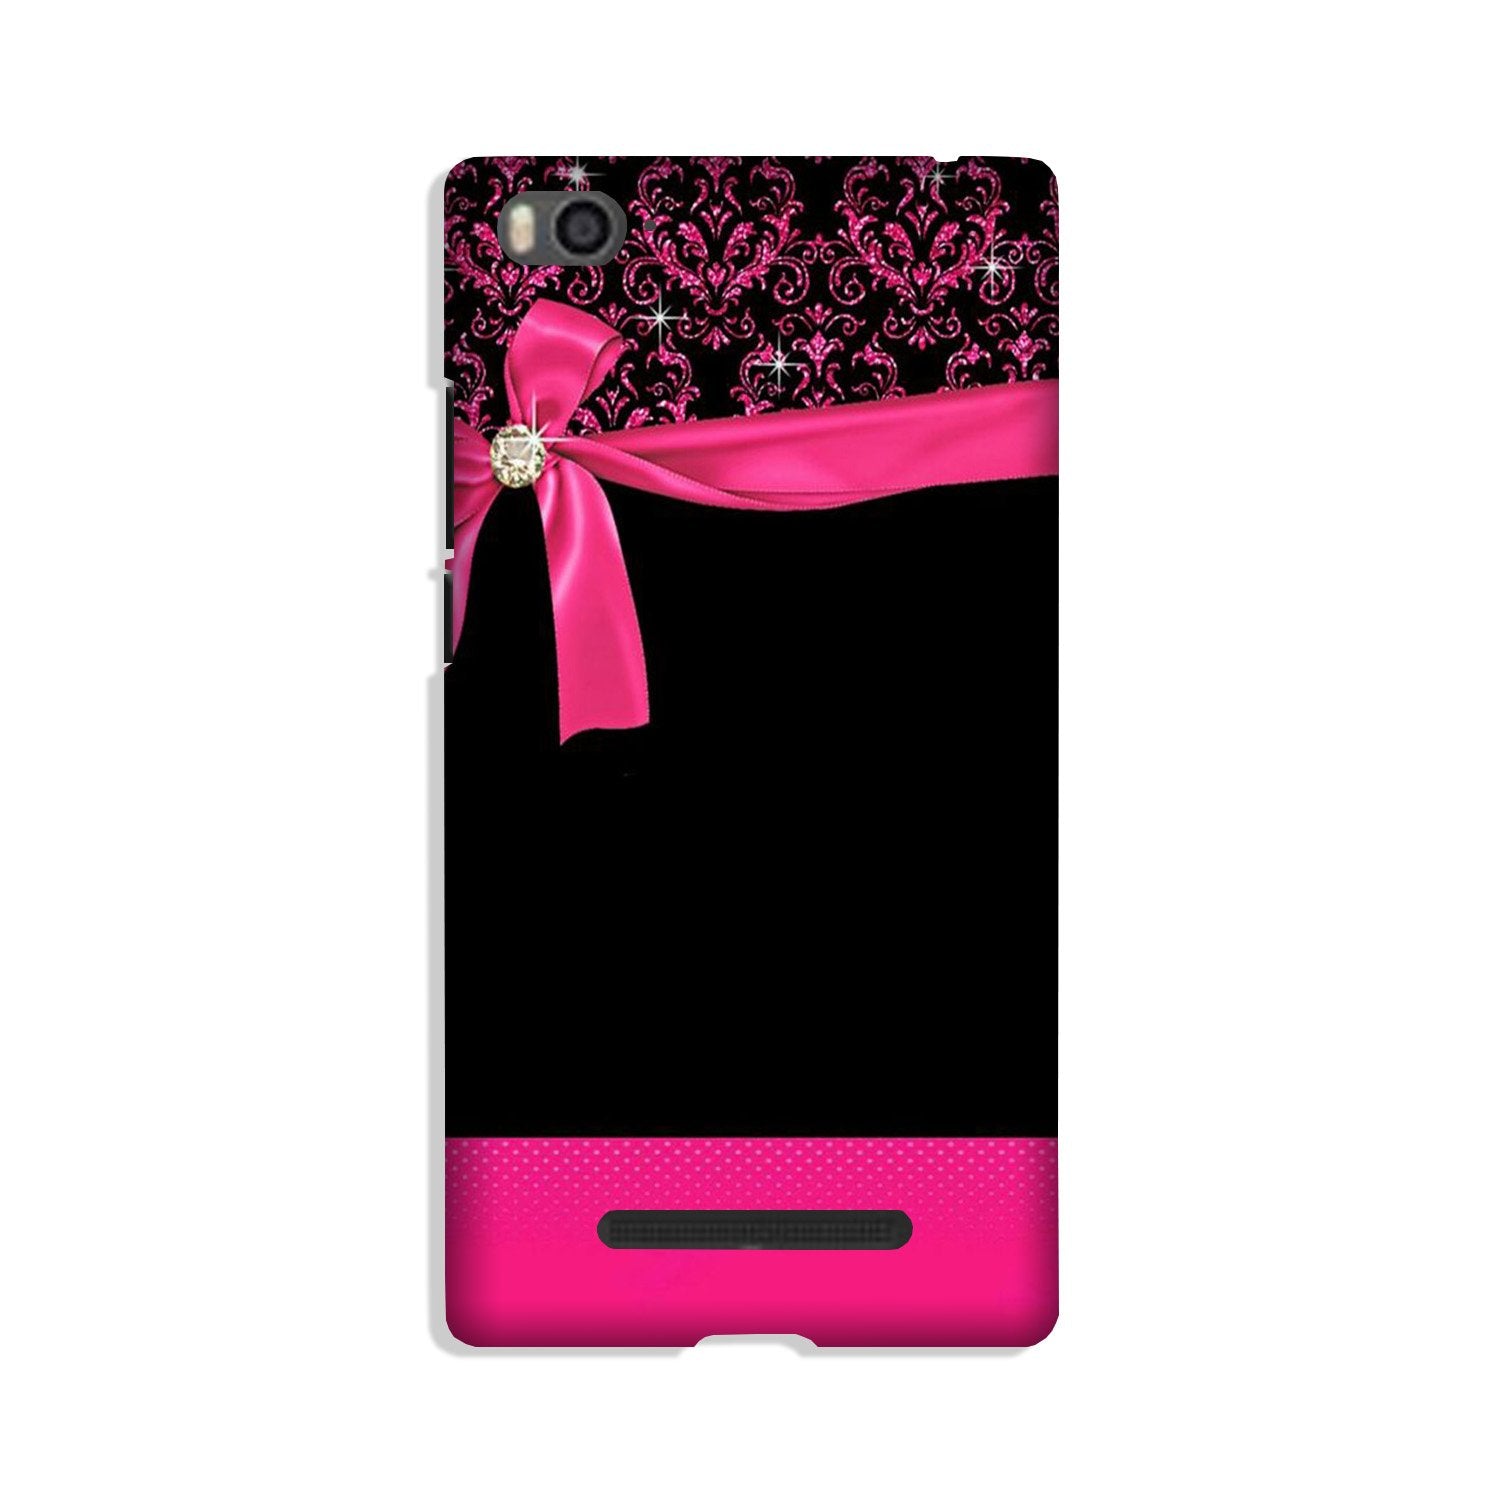 Gift Wrap4 Case for Xiaomi Mi 4i